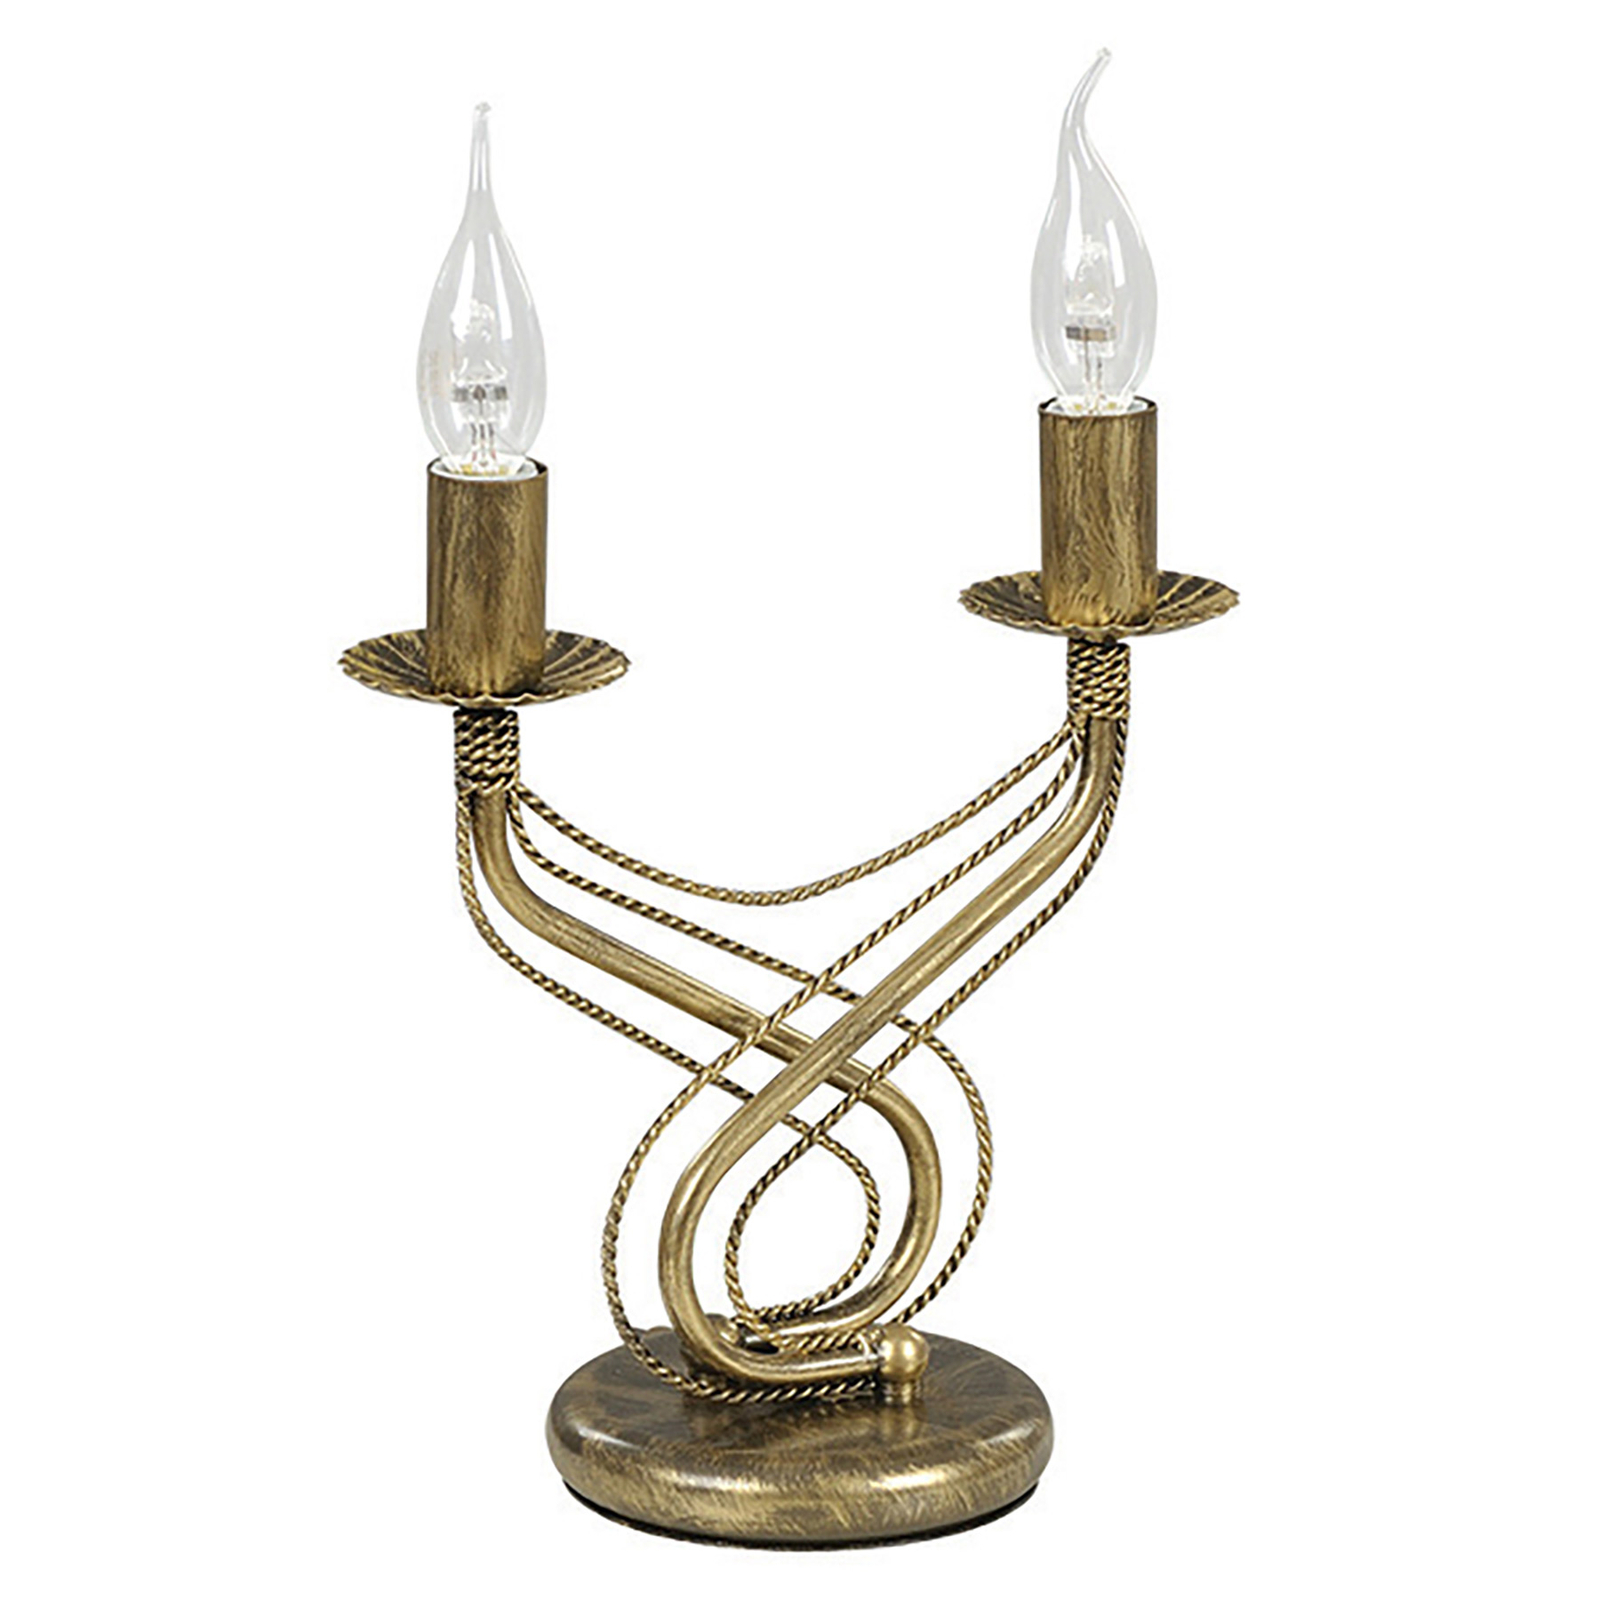 Tori-pöytälamppu kynttilänjalka kulta 2-lamppuinen